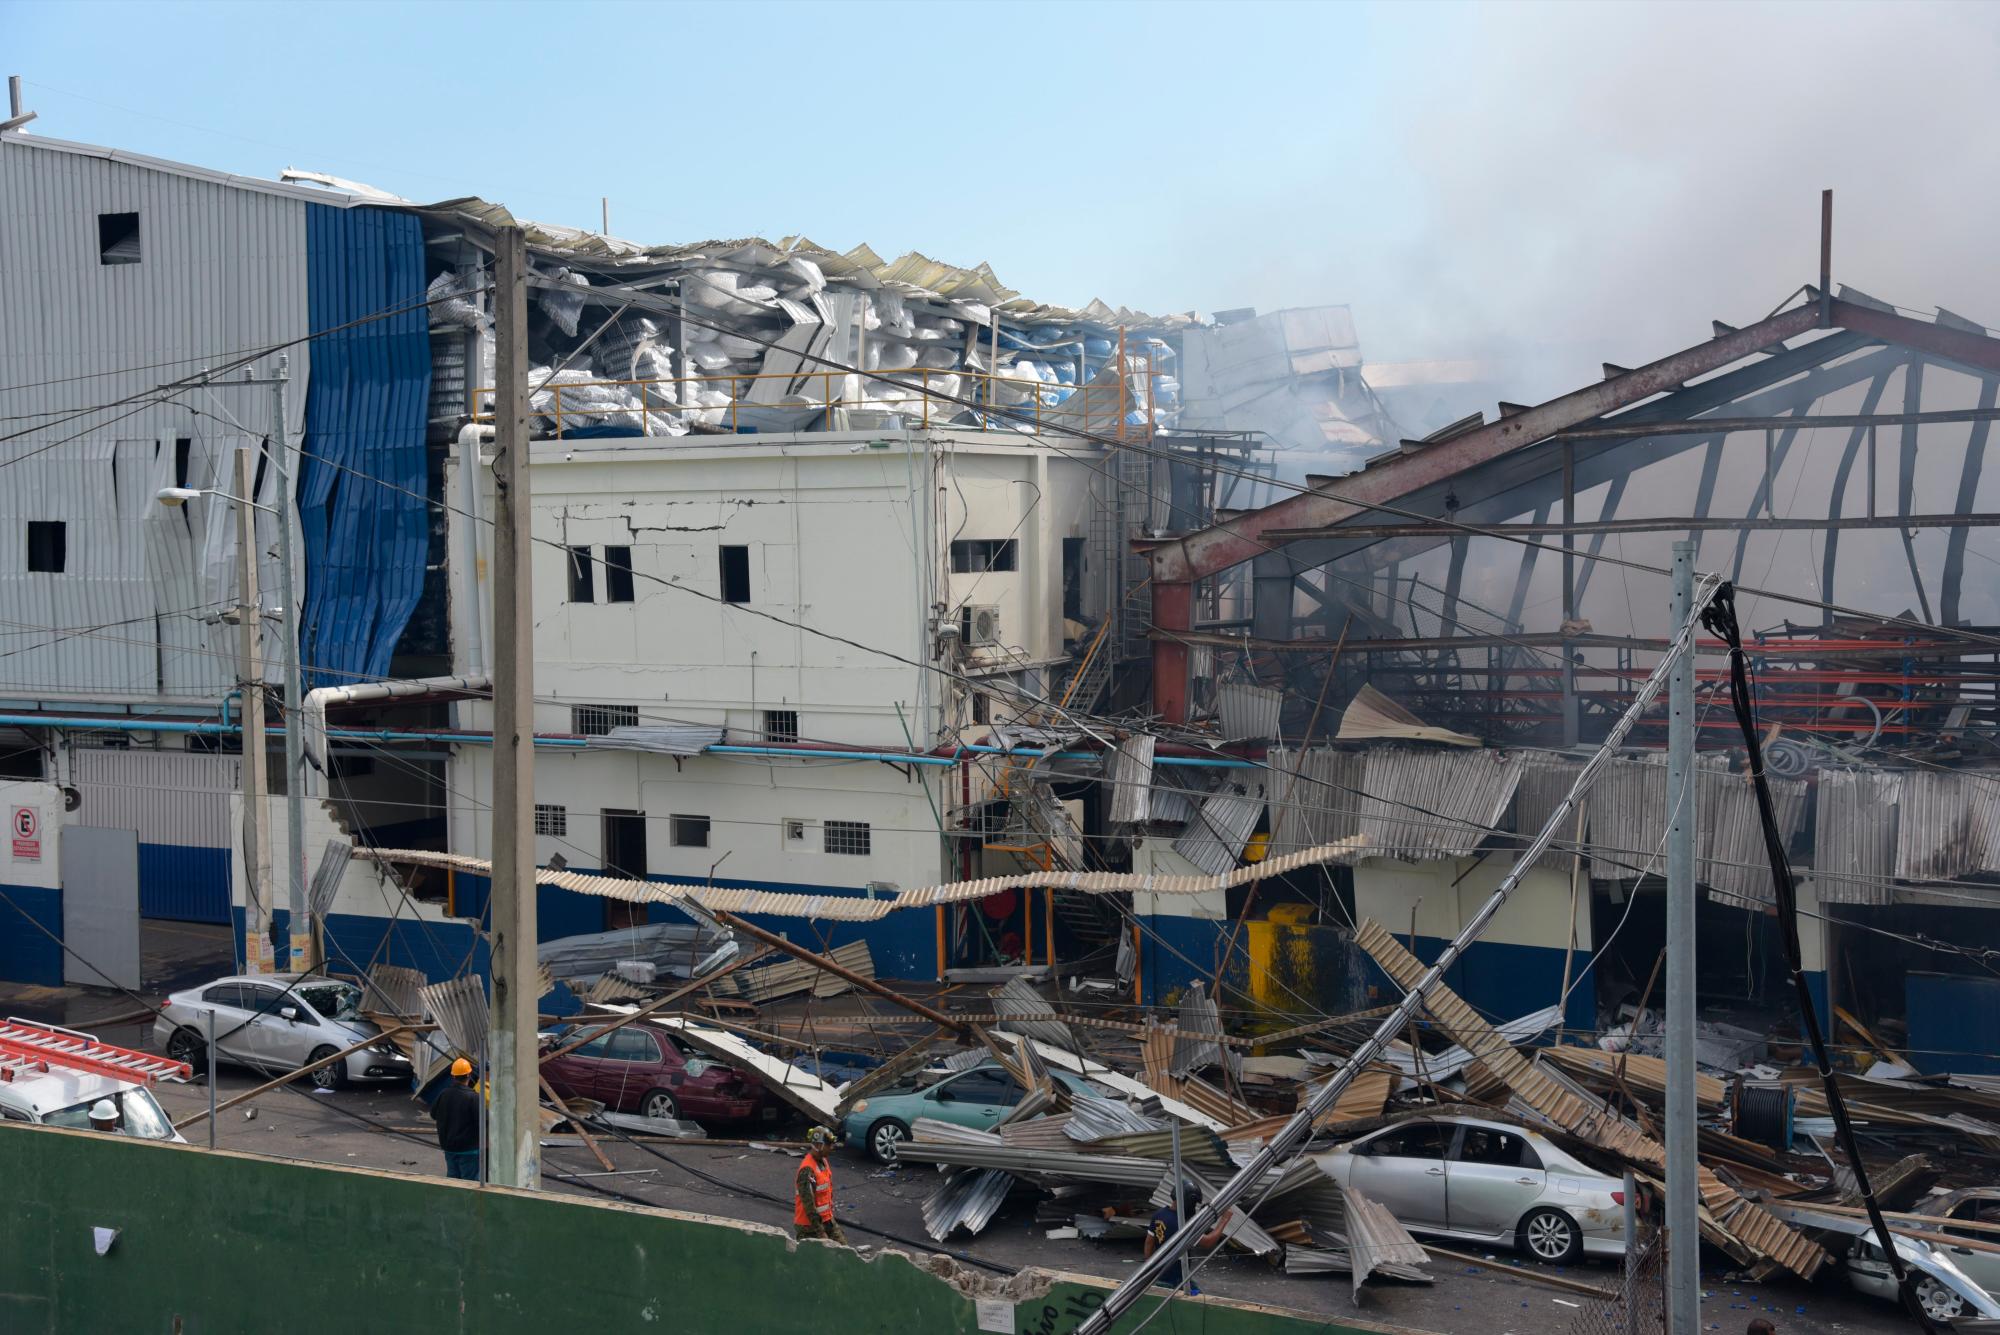 Cinco centros educativos y tres estancias infantiles resultaron afectados por la explosión ocurrida cerca de este mediodía en una fábrica de plásticos en el sector Villas Agrícolas.